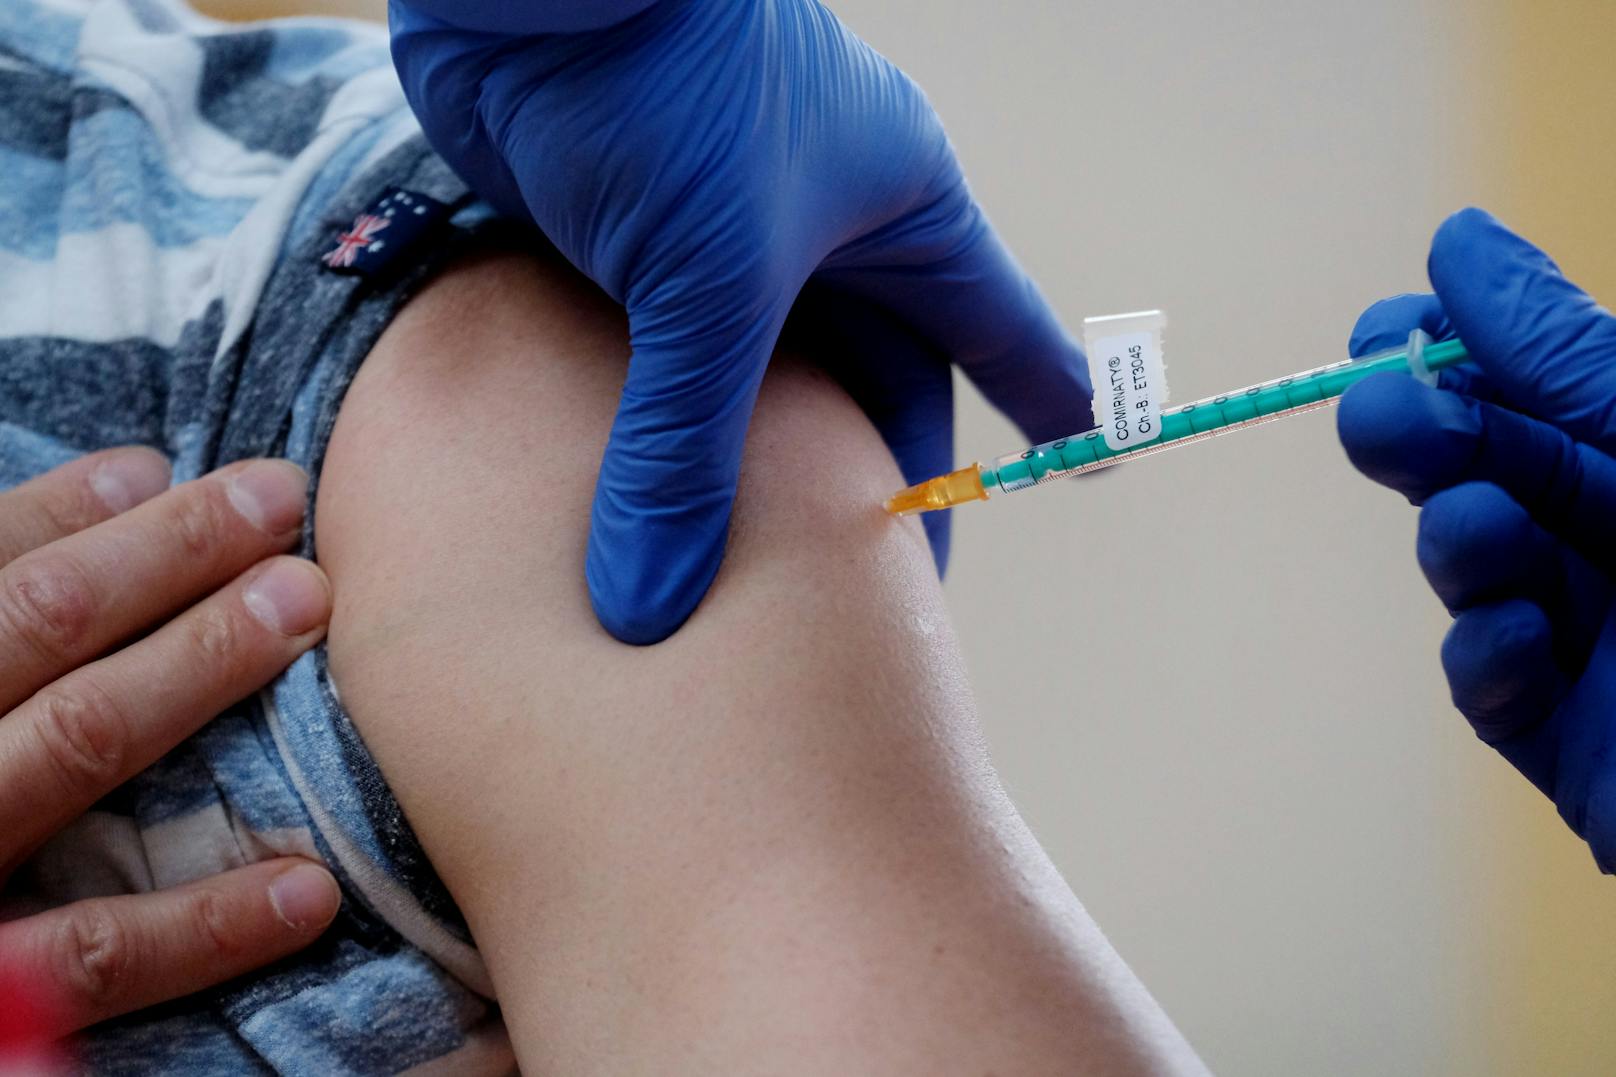 Herzkrank nach Corona-Impfung – Sportler klagt Arzt